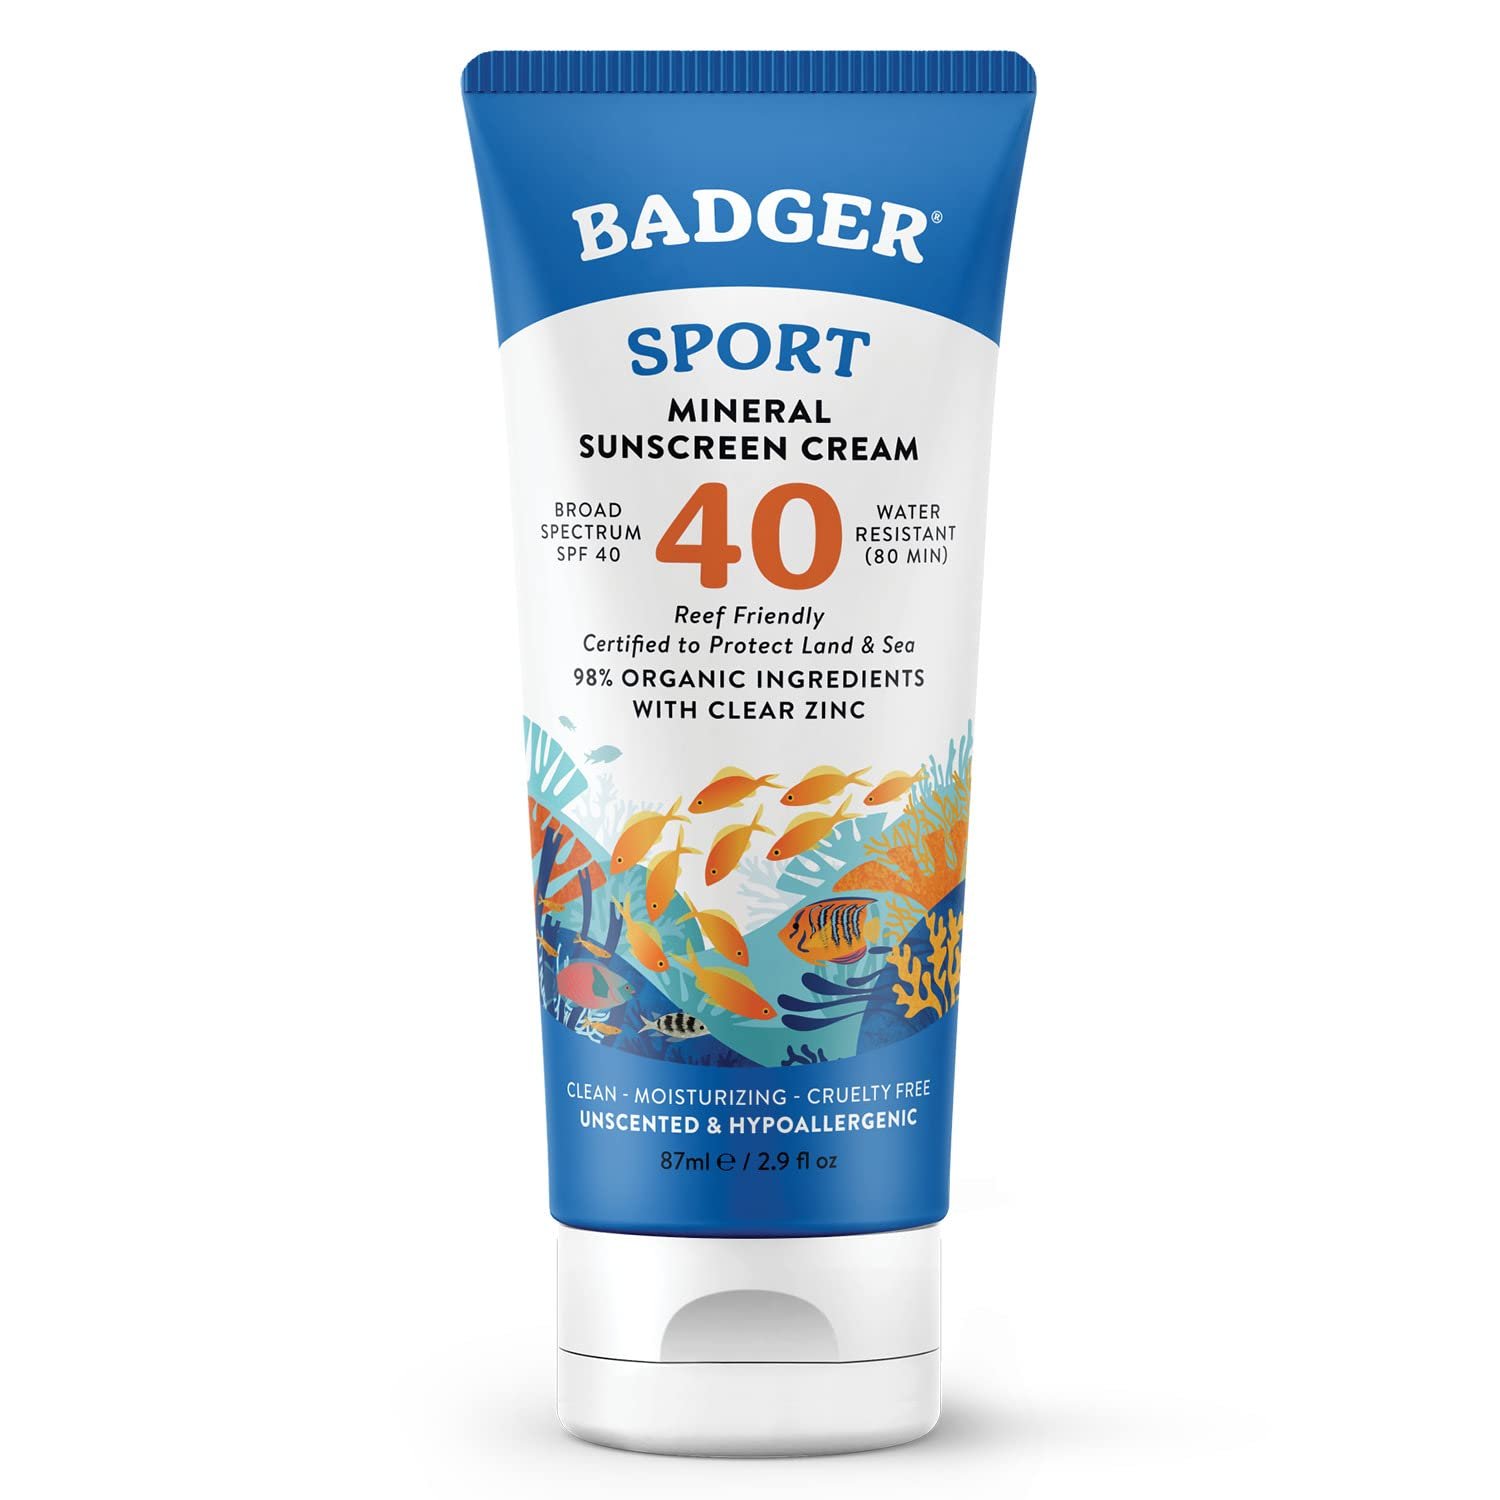 Badger sport sunscreen